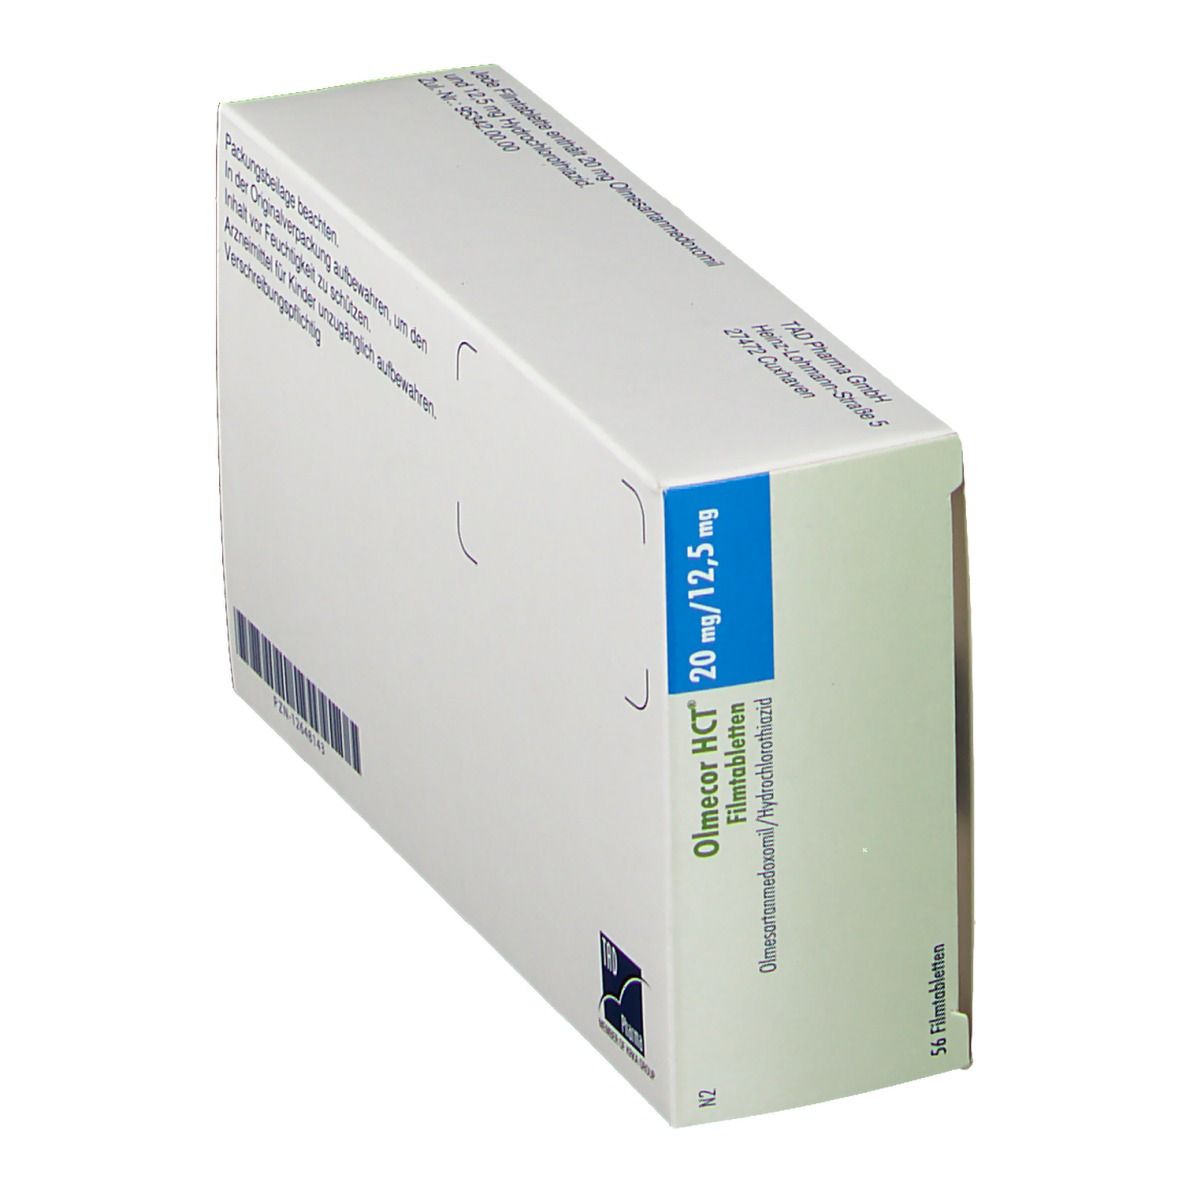 Olmecor HCT® 20 mg/12,5 mg